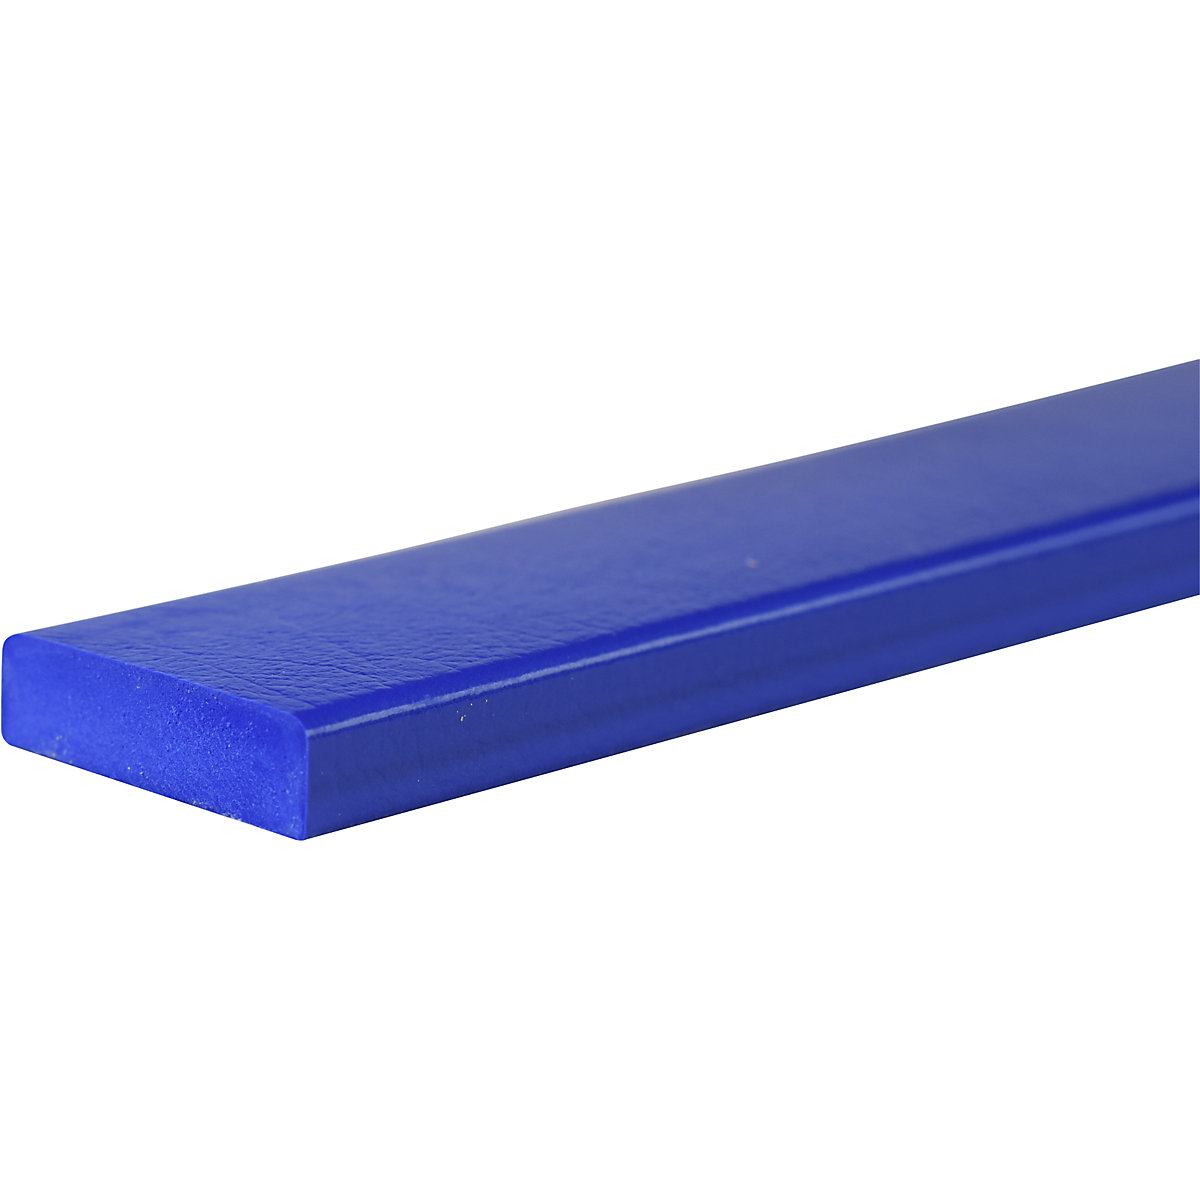 Protection des surfaces Knuffi® – SHG, type S, pièce de 1 mètre, bleu